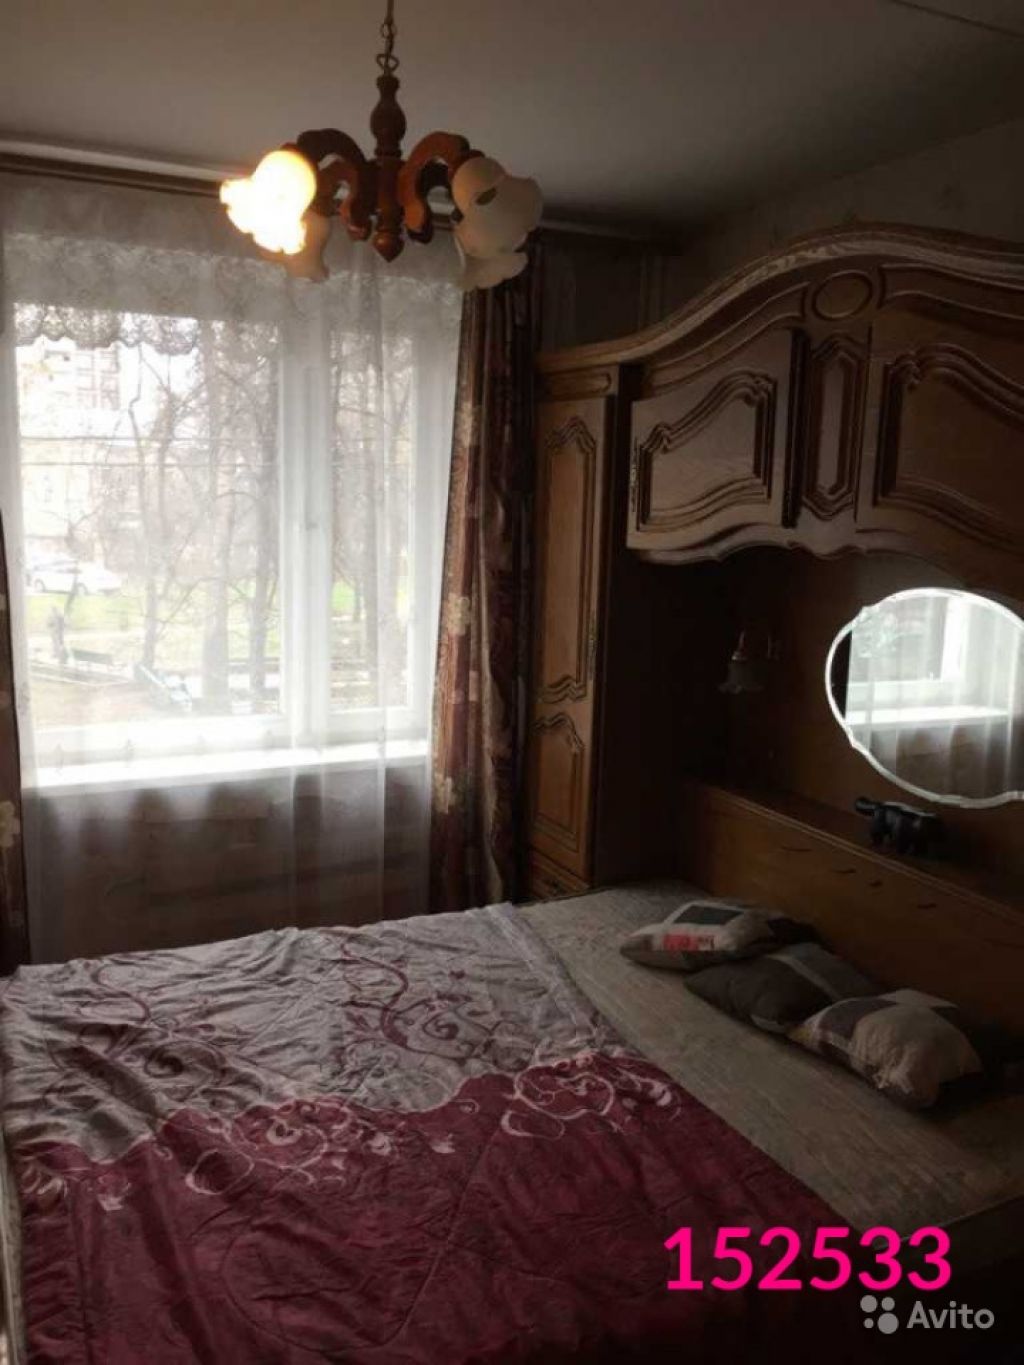 Сдам квартиру 3-к квартира 62 м² на 3 этаже 12-этажного панельного дома в Москве. Фото 1